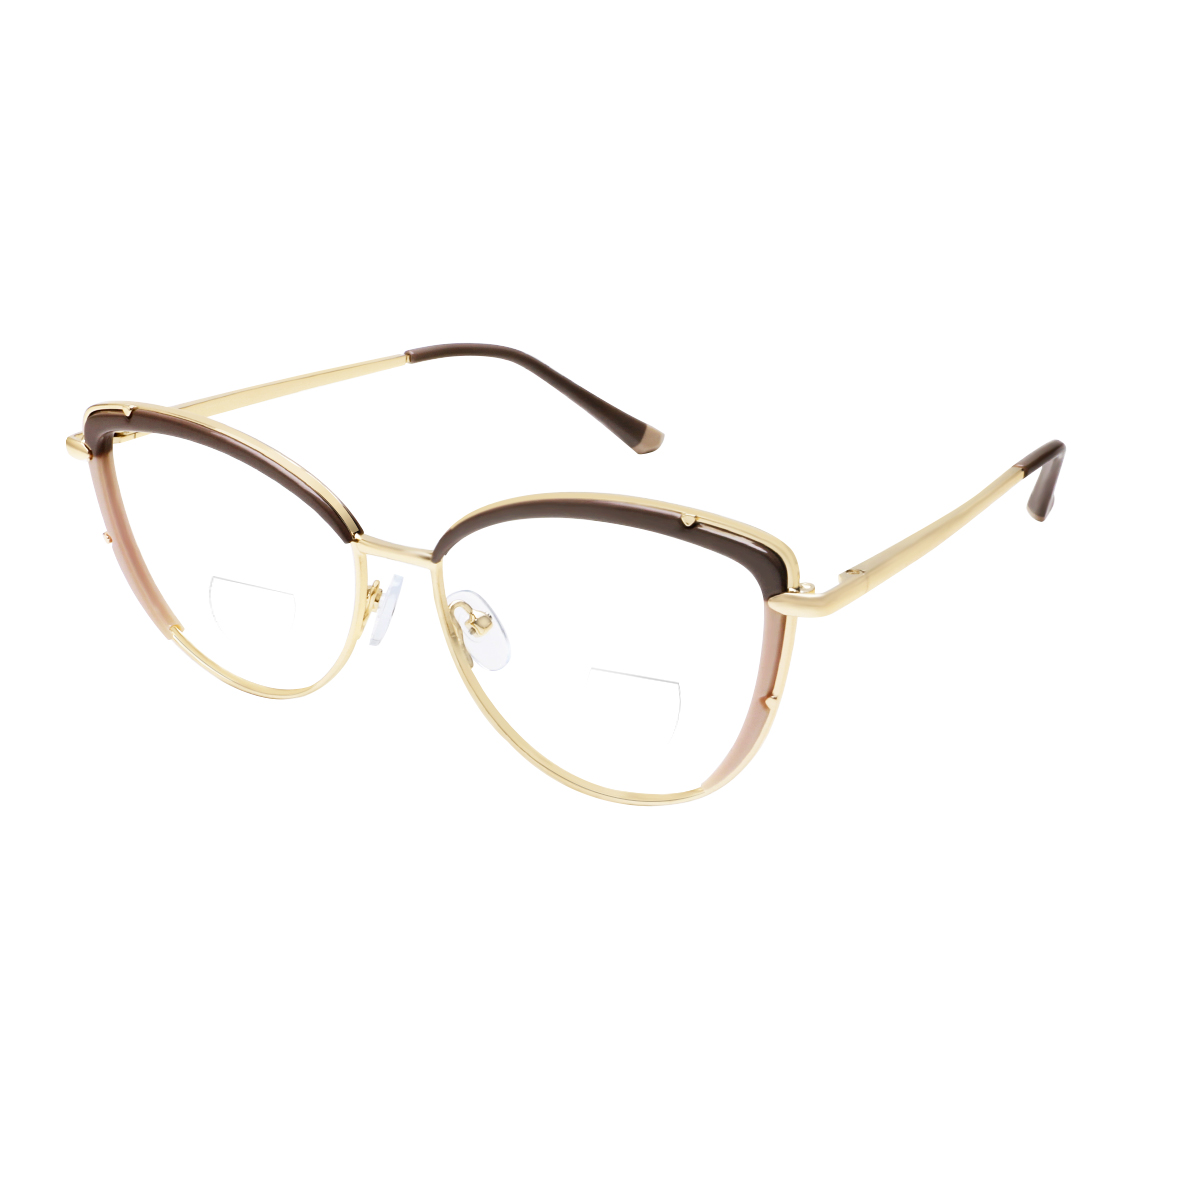 Romy - Square Brown-Gold Reading Glasses for Women